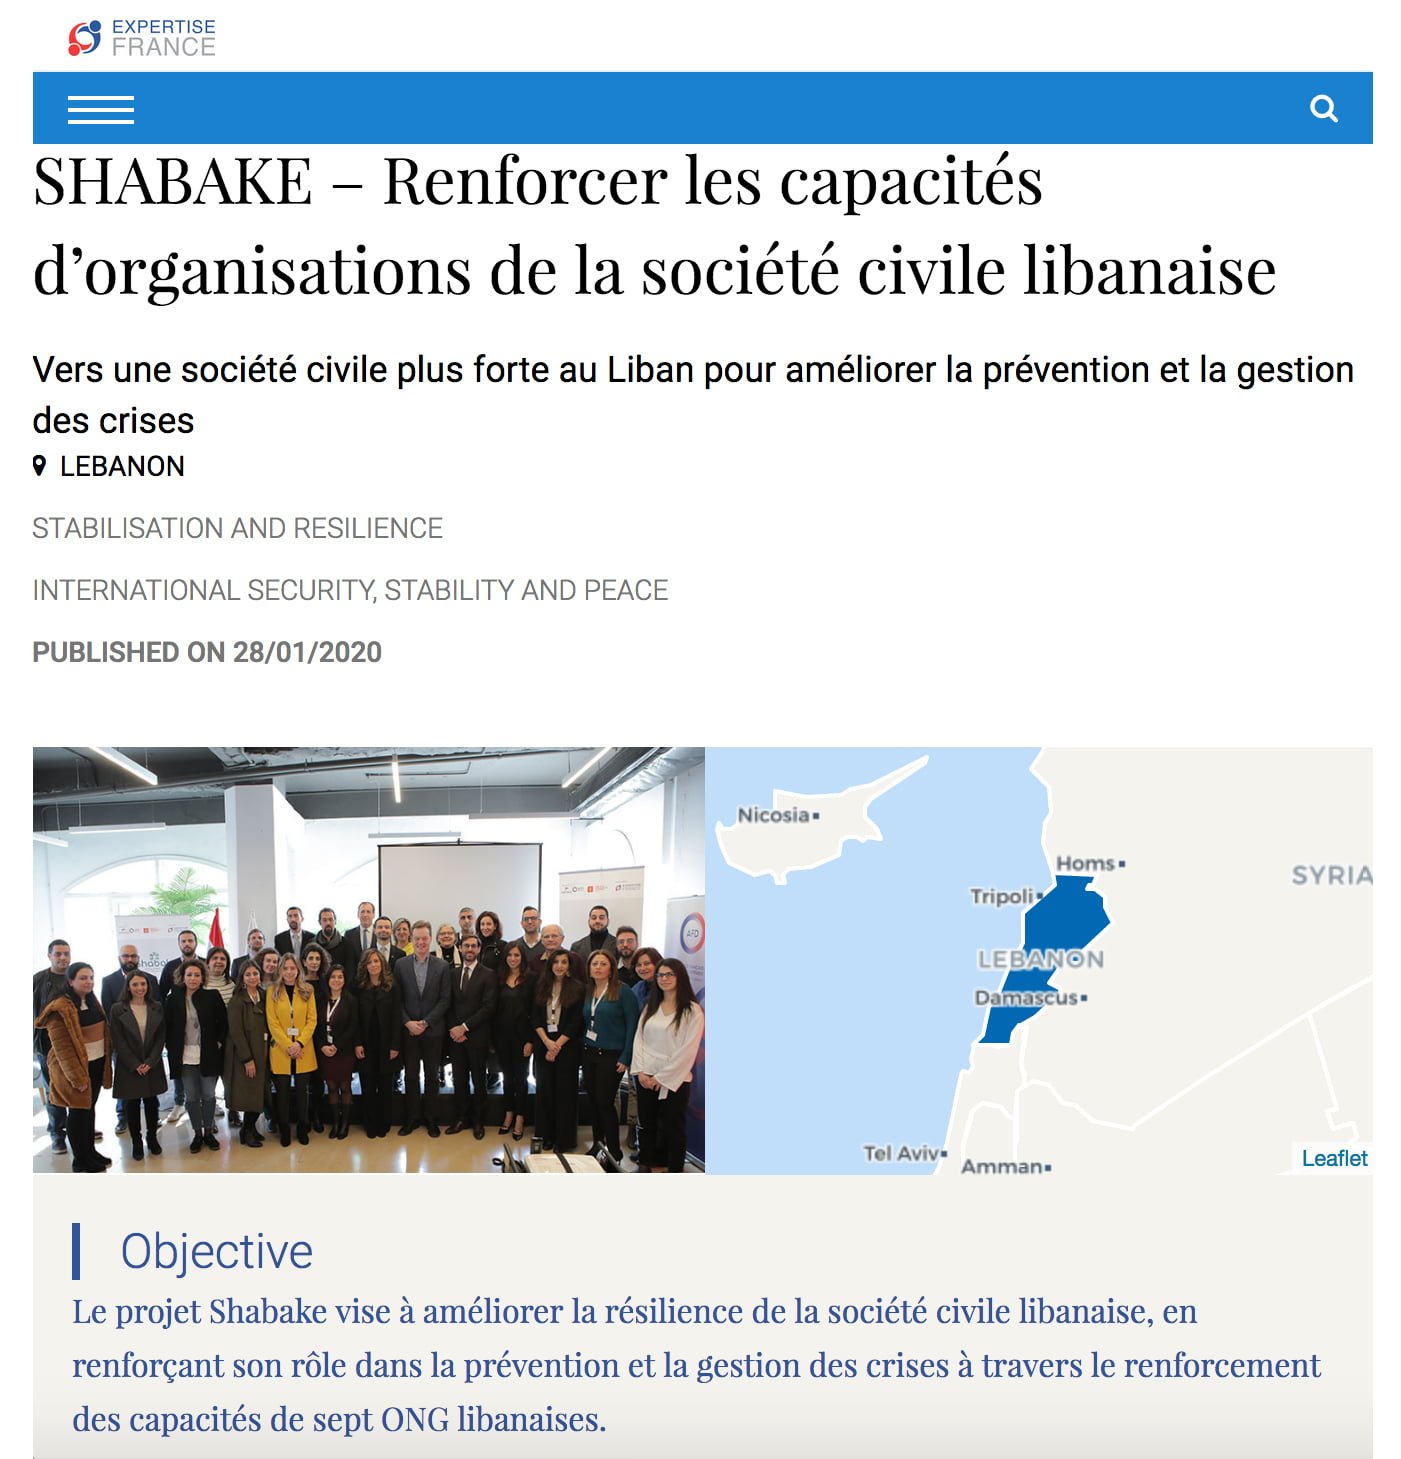 SHABAKE – Renforcer les capacités d’organisations de la société civile libanaise